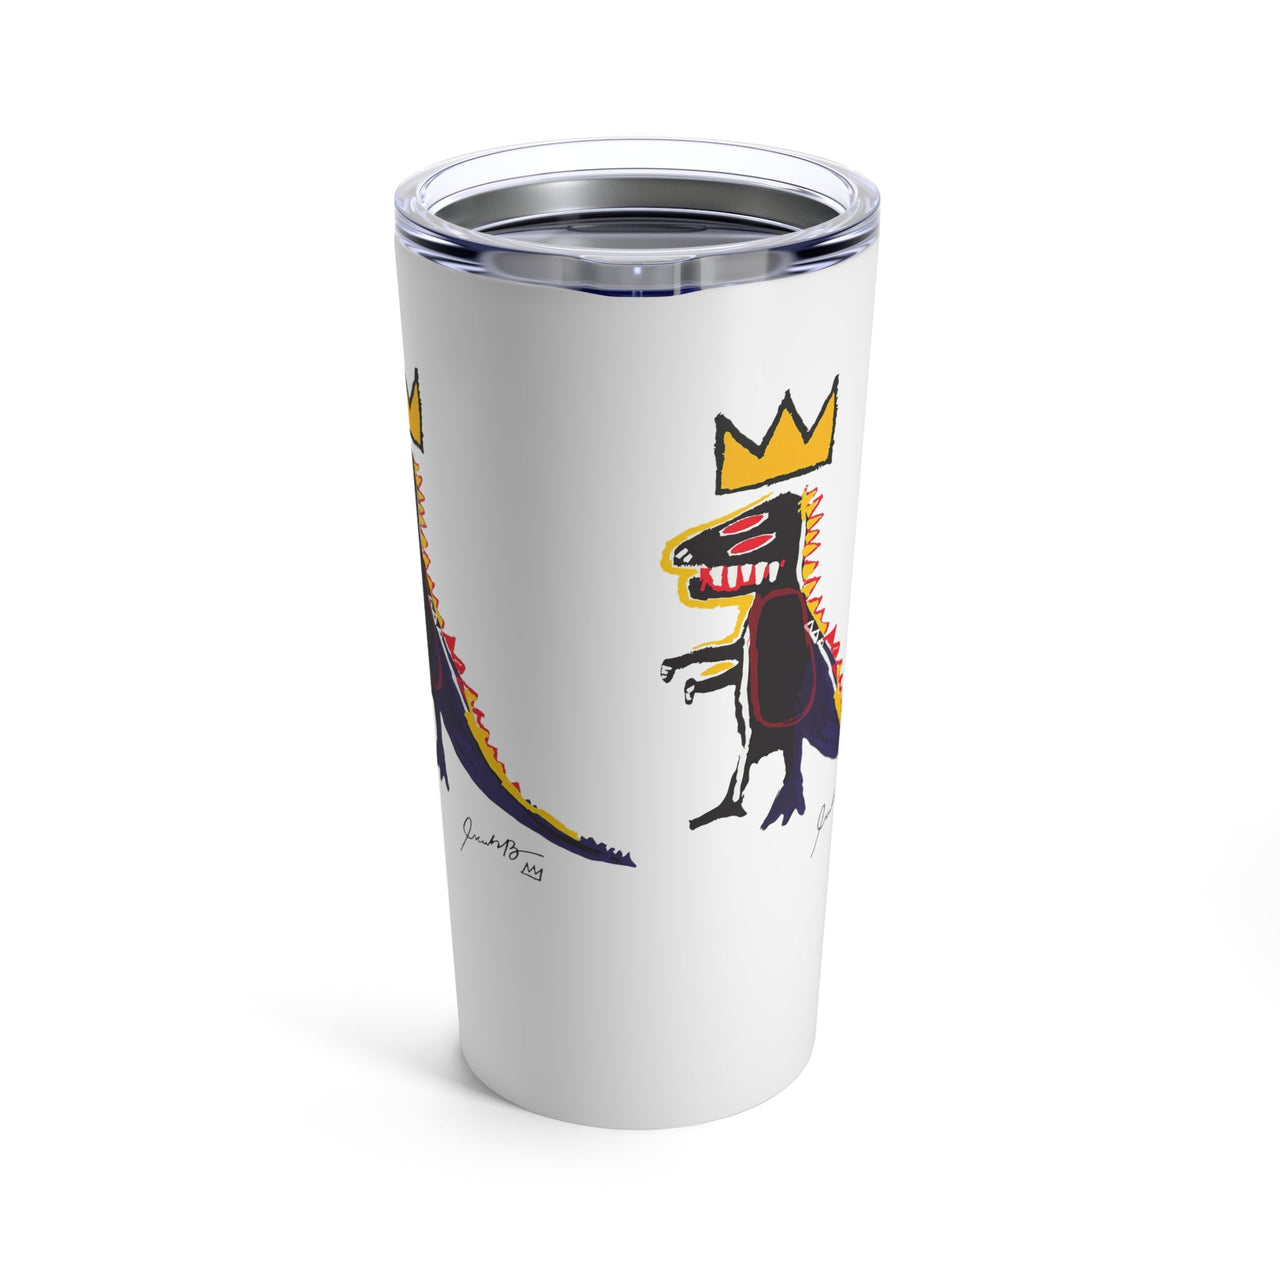 Basquiat Pez Dispenser (Dinosaur) 20 oz White Tumbler - Home + Living - Harvey Ltd